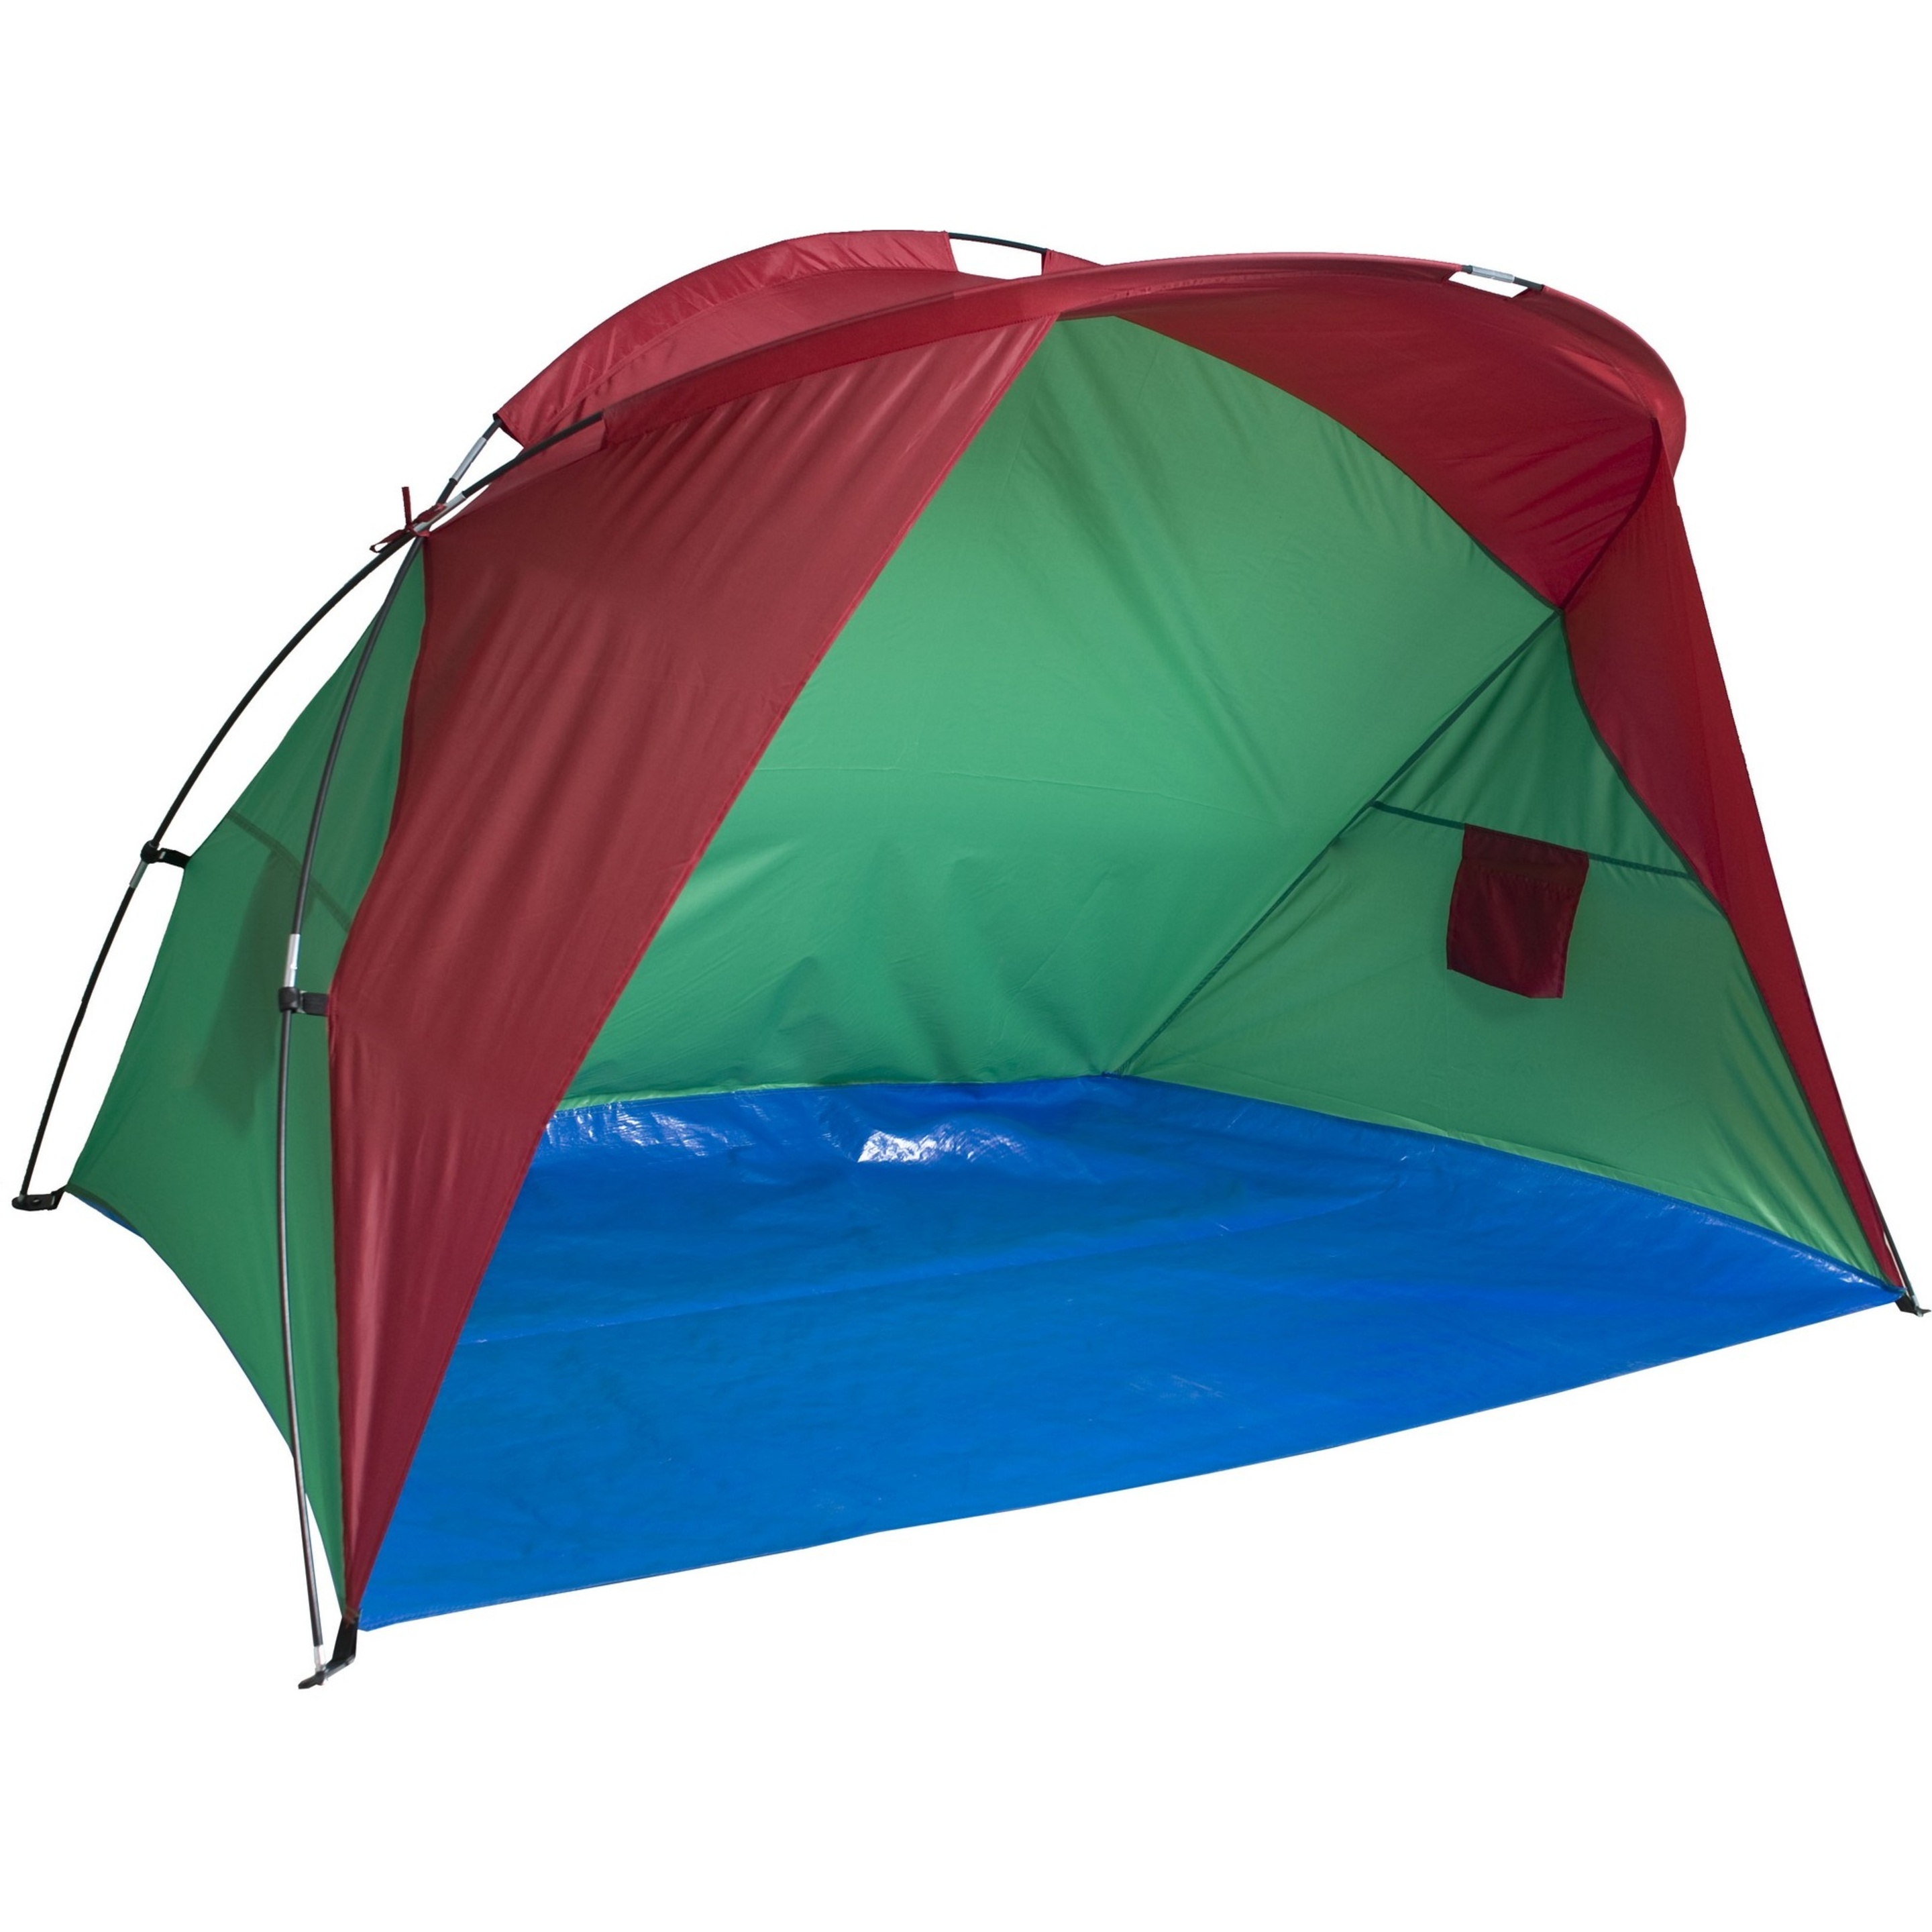 Trespass - Tienda De De Playa Con Varillas Y Estacas Modelo Lunan - Camping/acampada (Multicolor)